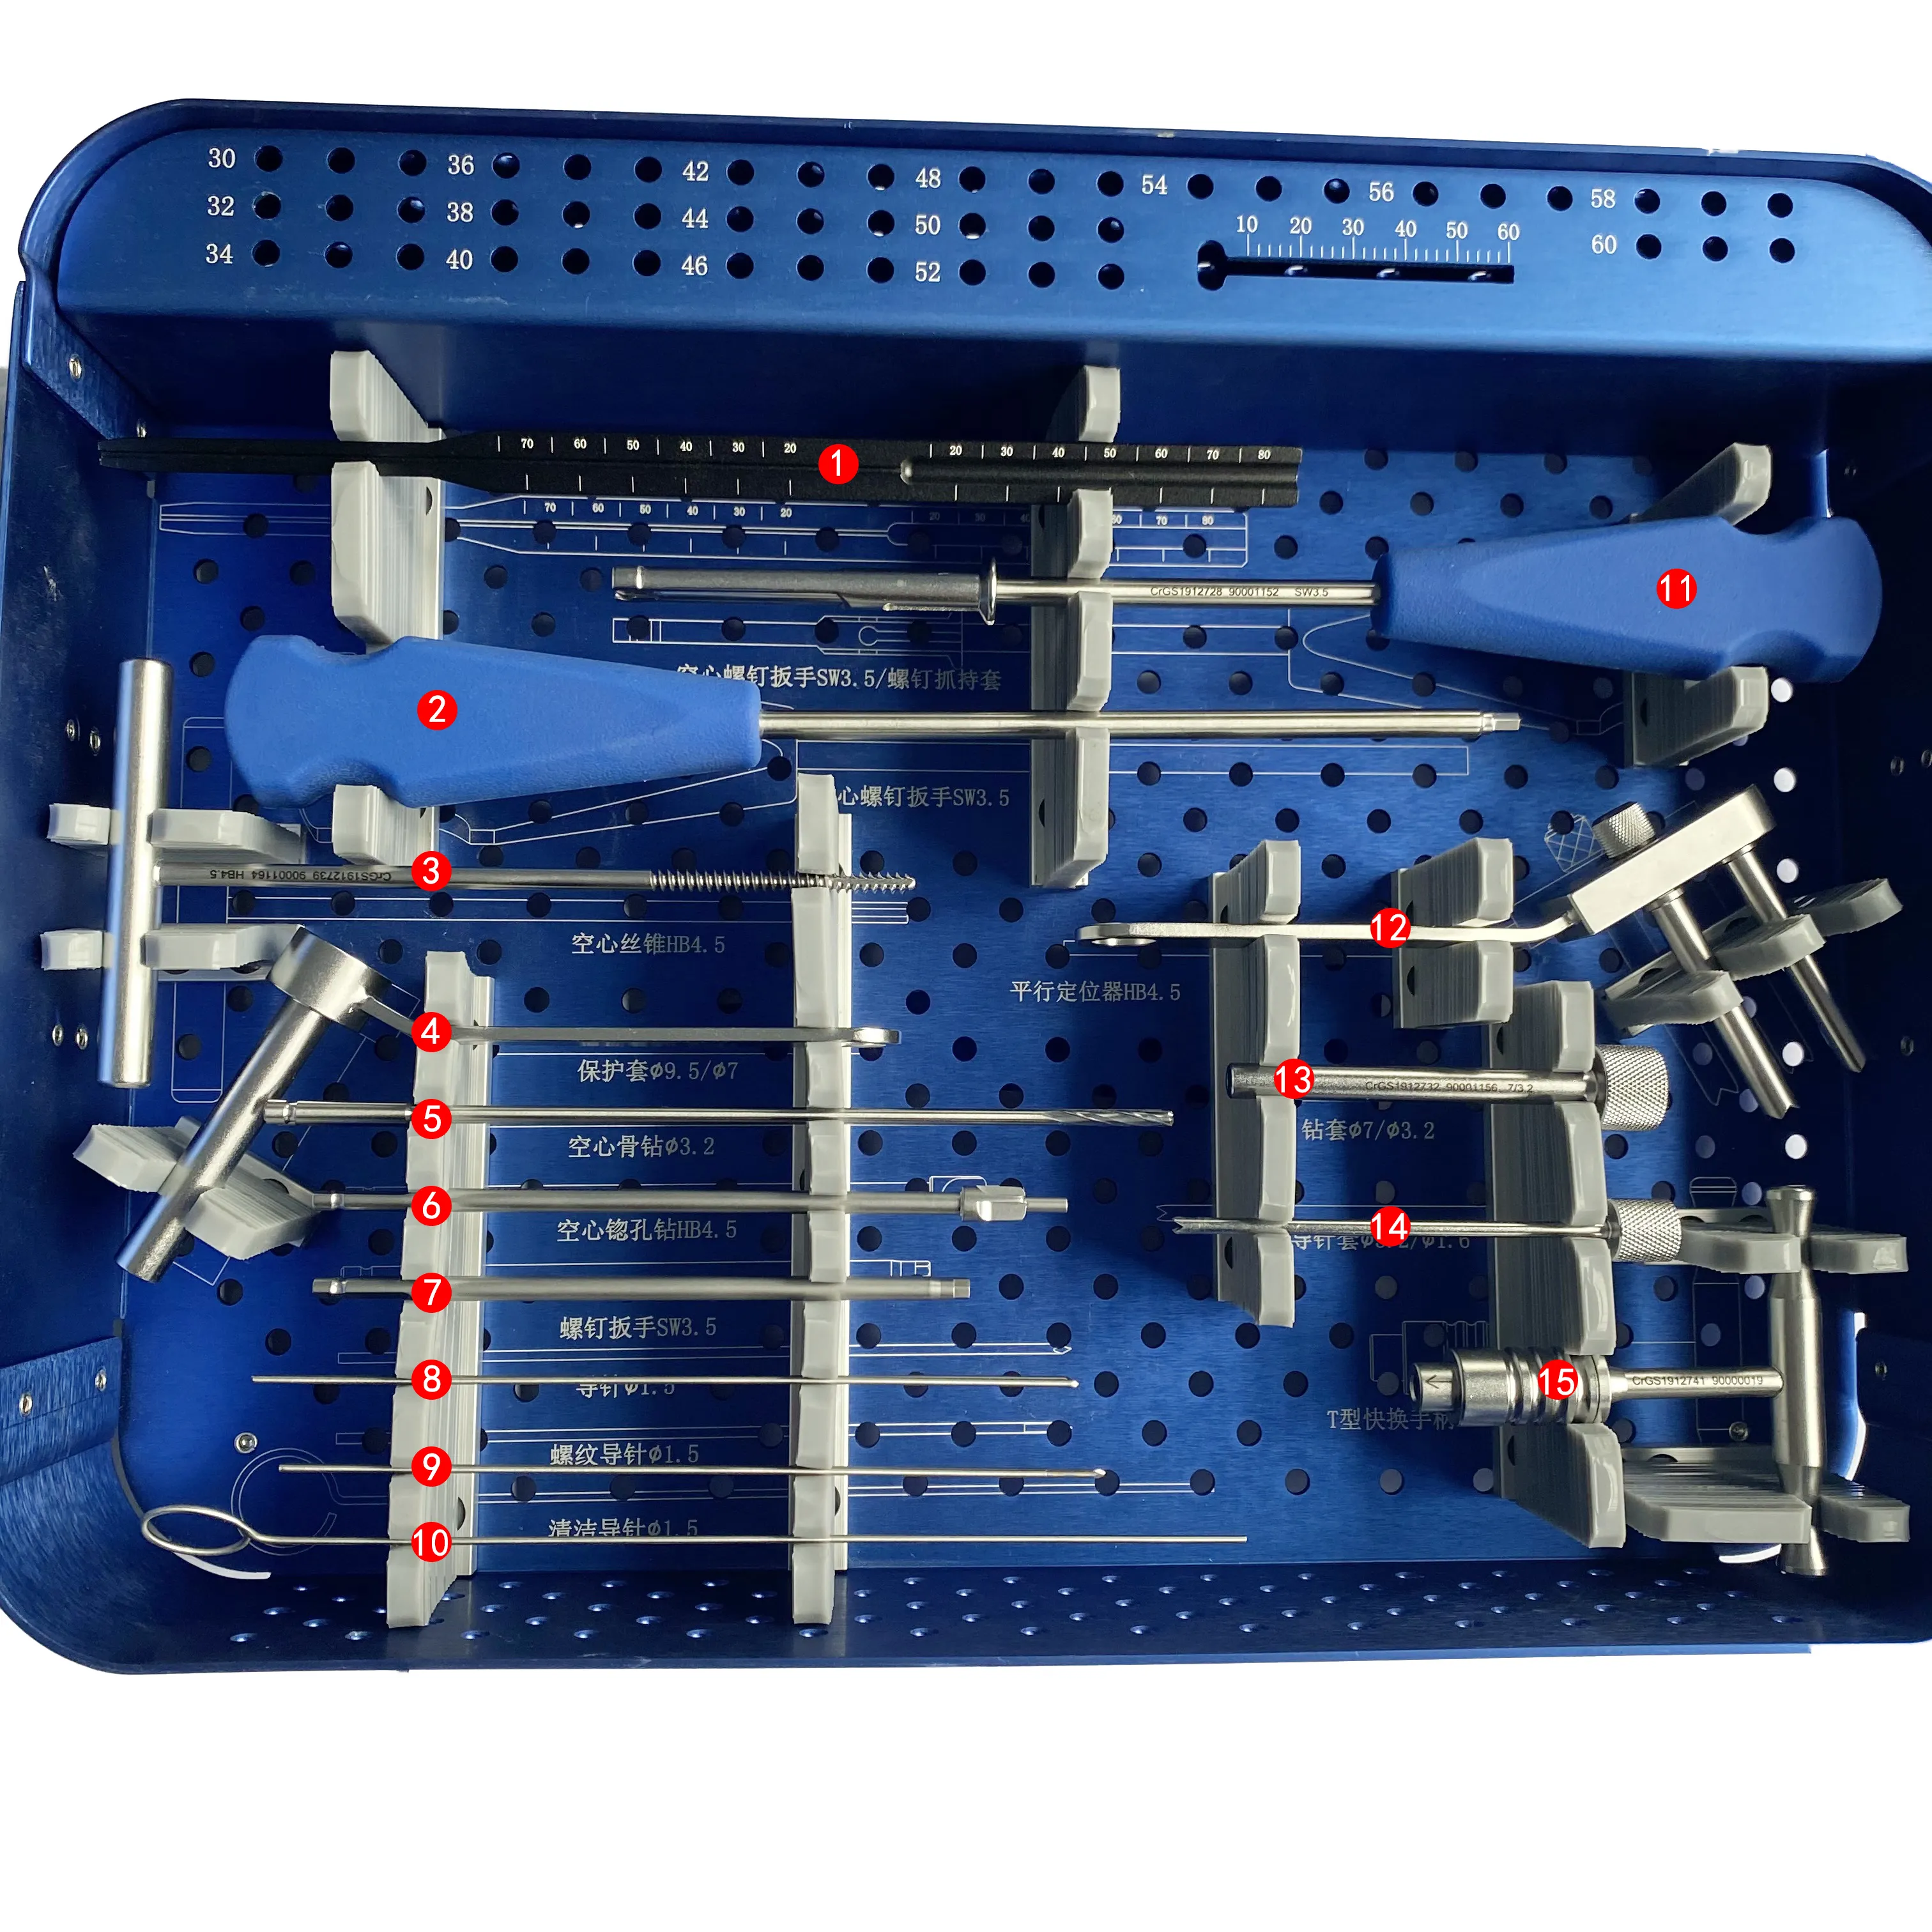 Sistema de tornillo canulado (4,5), conjunto de instrumentos ortopédicos quirúrgicos